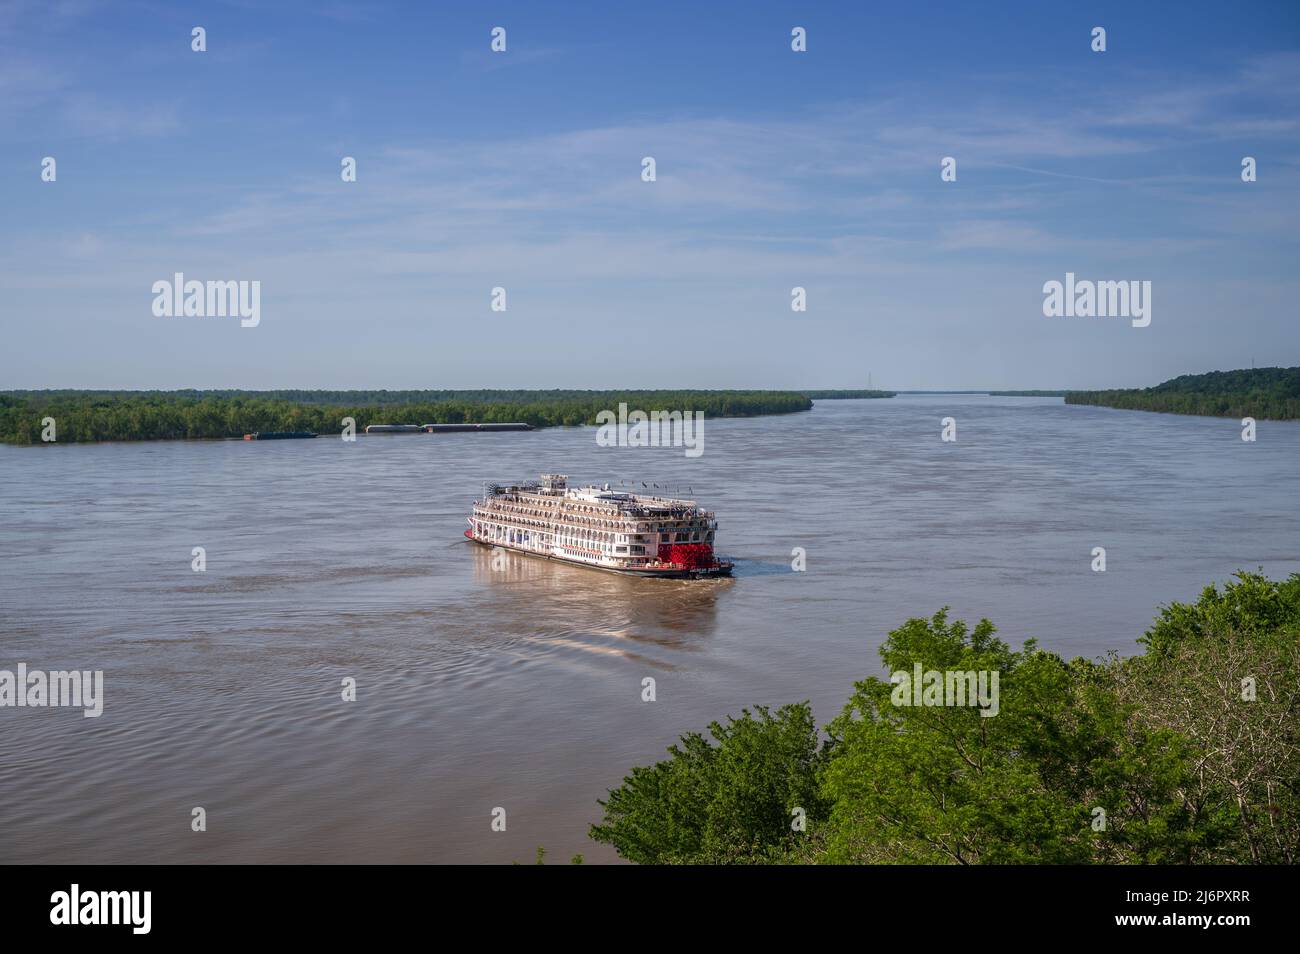 Bateau à vapeur American Queen sur le fleuve Mississippi au départ de Natchez, Mississippi, États-Unis. Banque D'Images